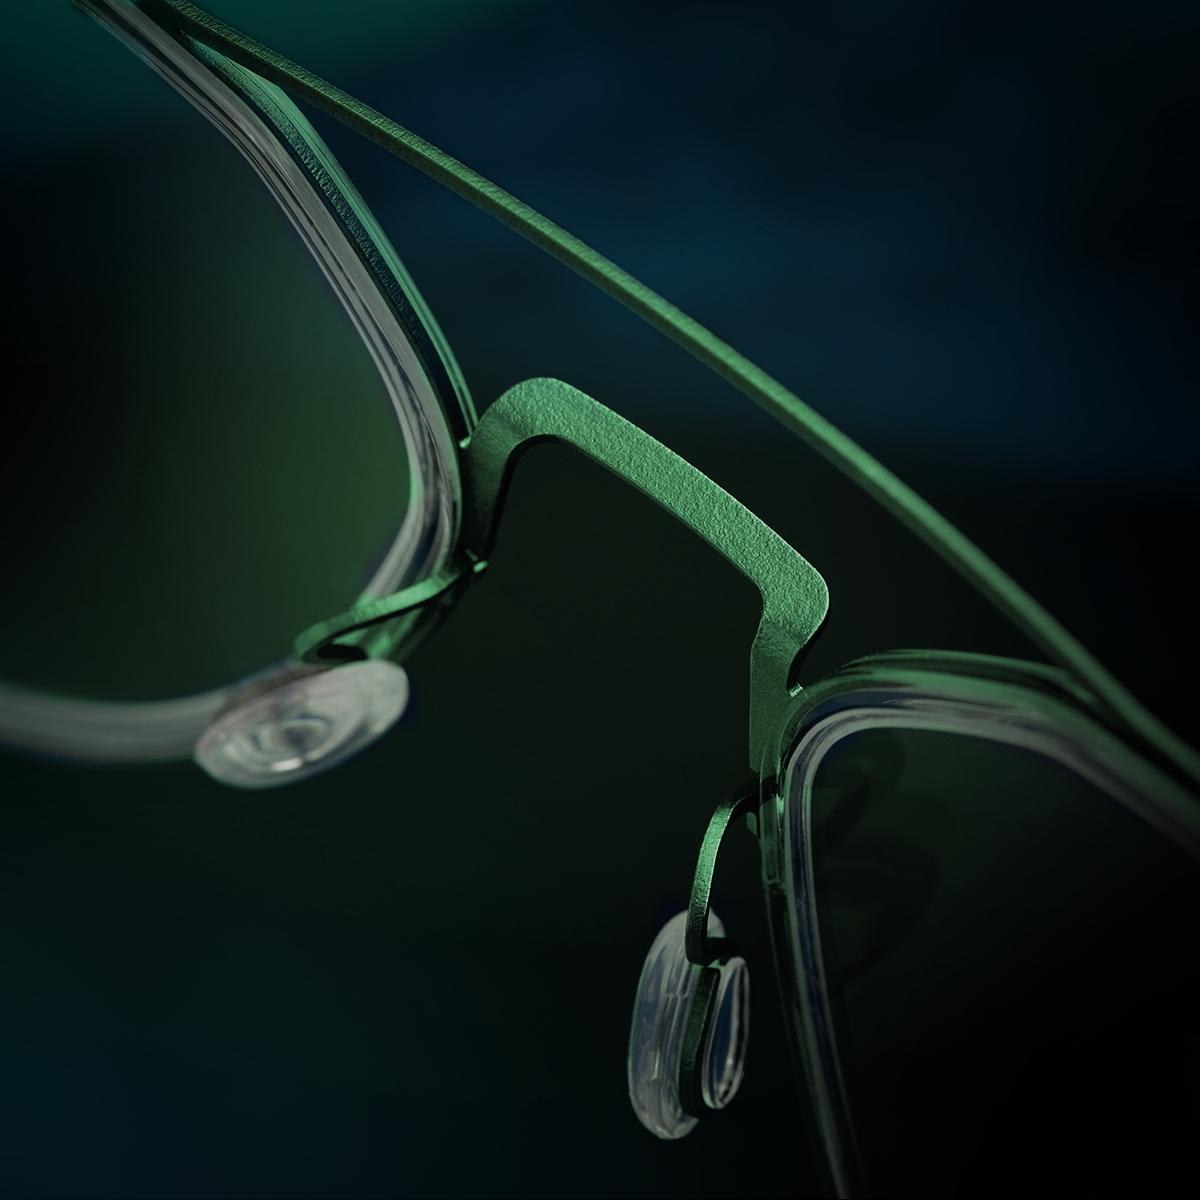 Detailansicht des Nasenstegs einer grünen Pilotenbrille aus Titan der Kollektion LINDBERG strip titanium, Modell 9745 117